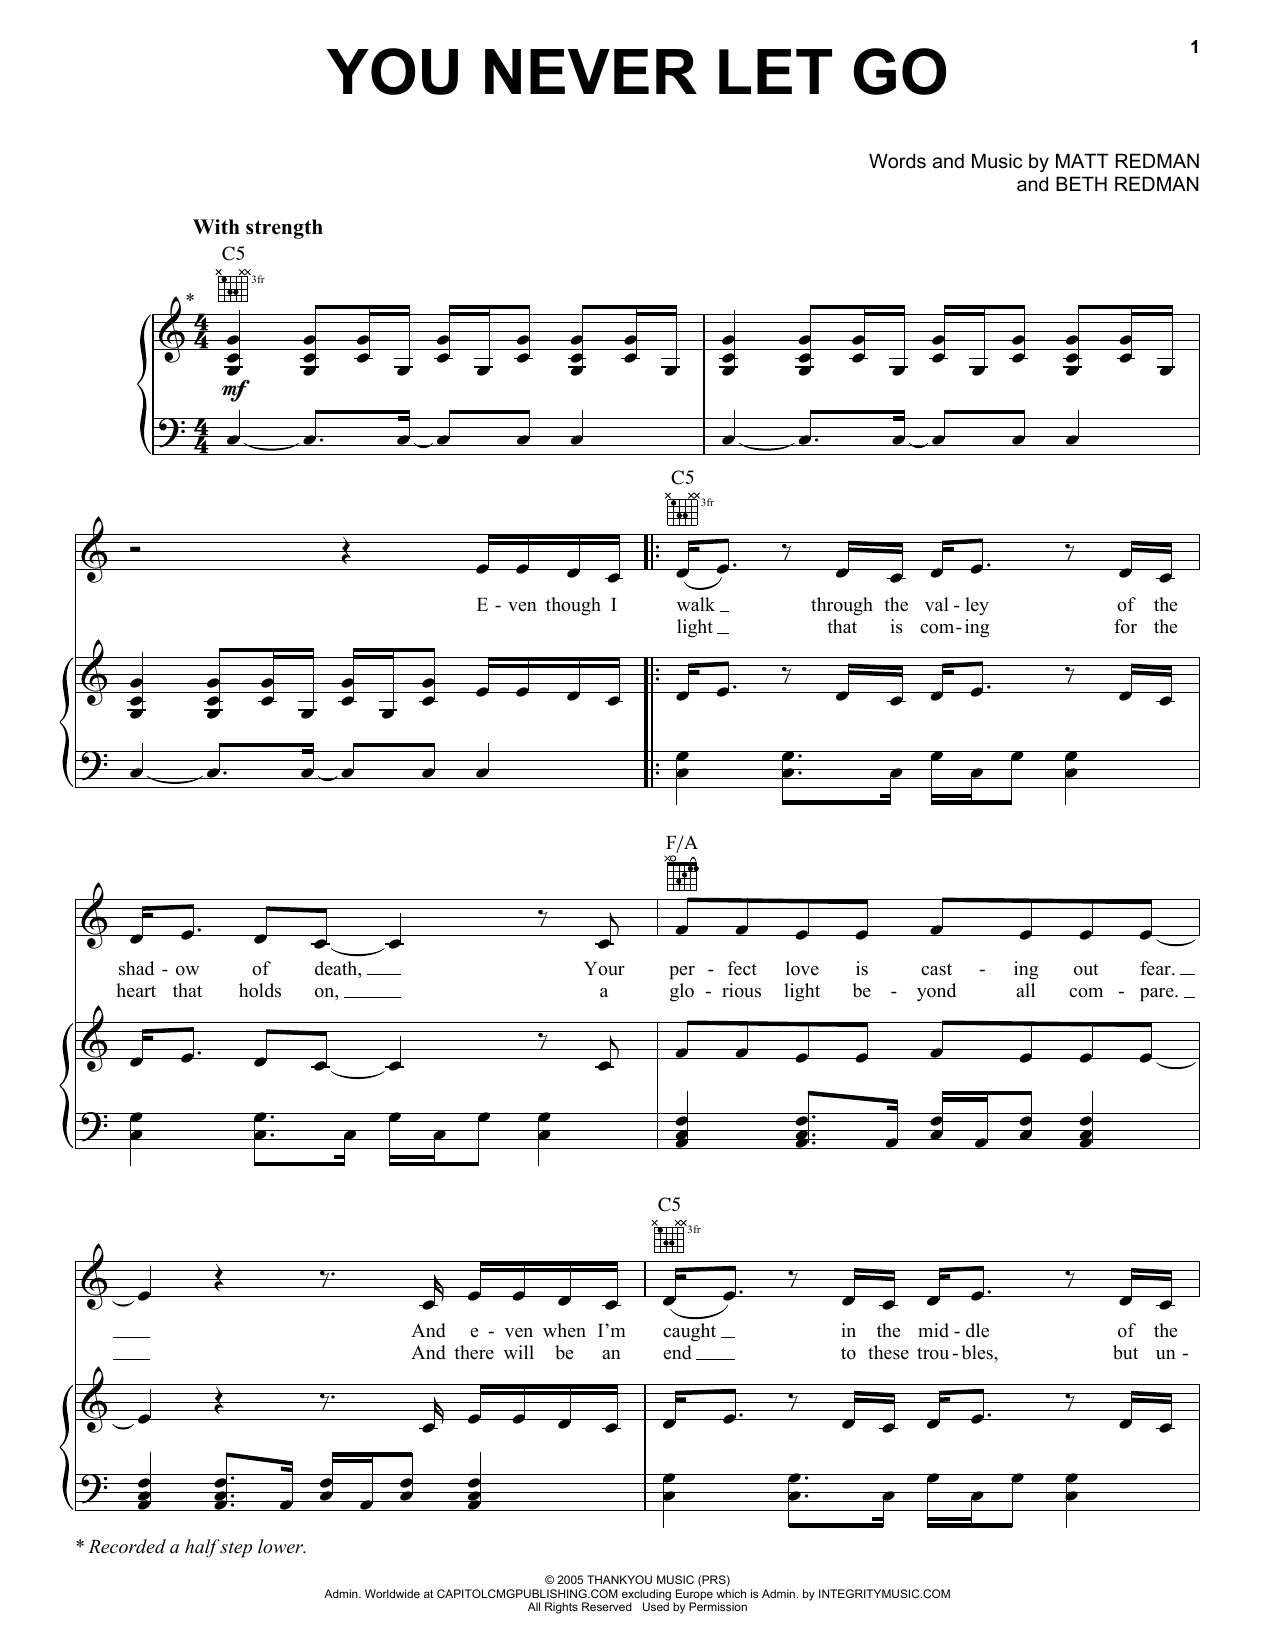 Matt Redman You Never Let Go Sheet Music Notes & Chords for Ukulele - Download or Print PDF